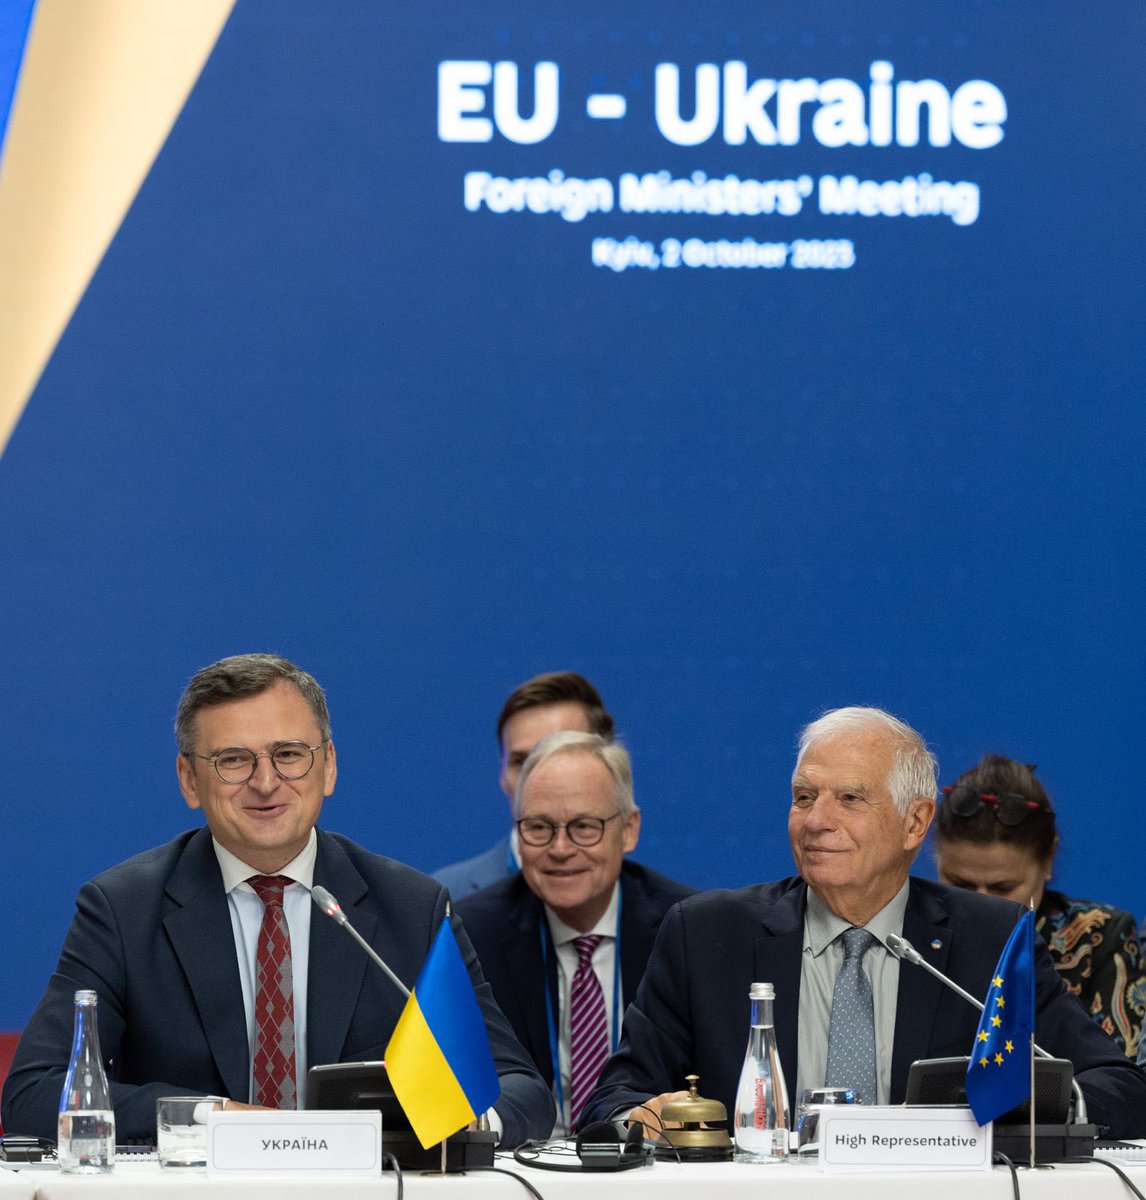 جوزيب بوريل: عندما نكون معًا، نكون أقوى. إن الاتحاد الأوروبي كان وسيظل الداعم الأول لأوكرانيا. شكرًا لك @ZelenskyyUa و@DmytroKuleba على استضافتنا اليوم